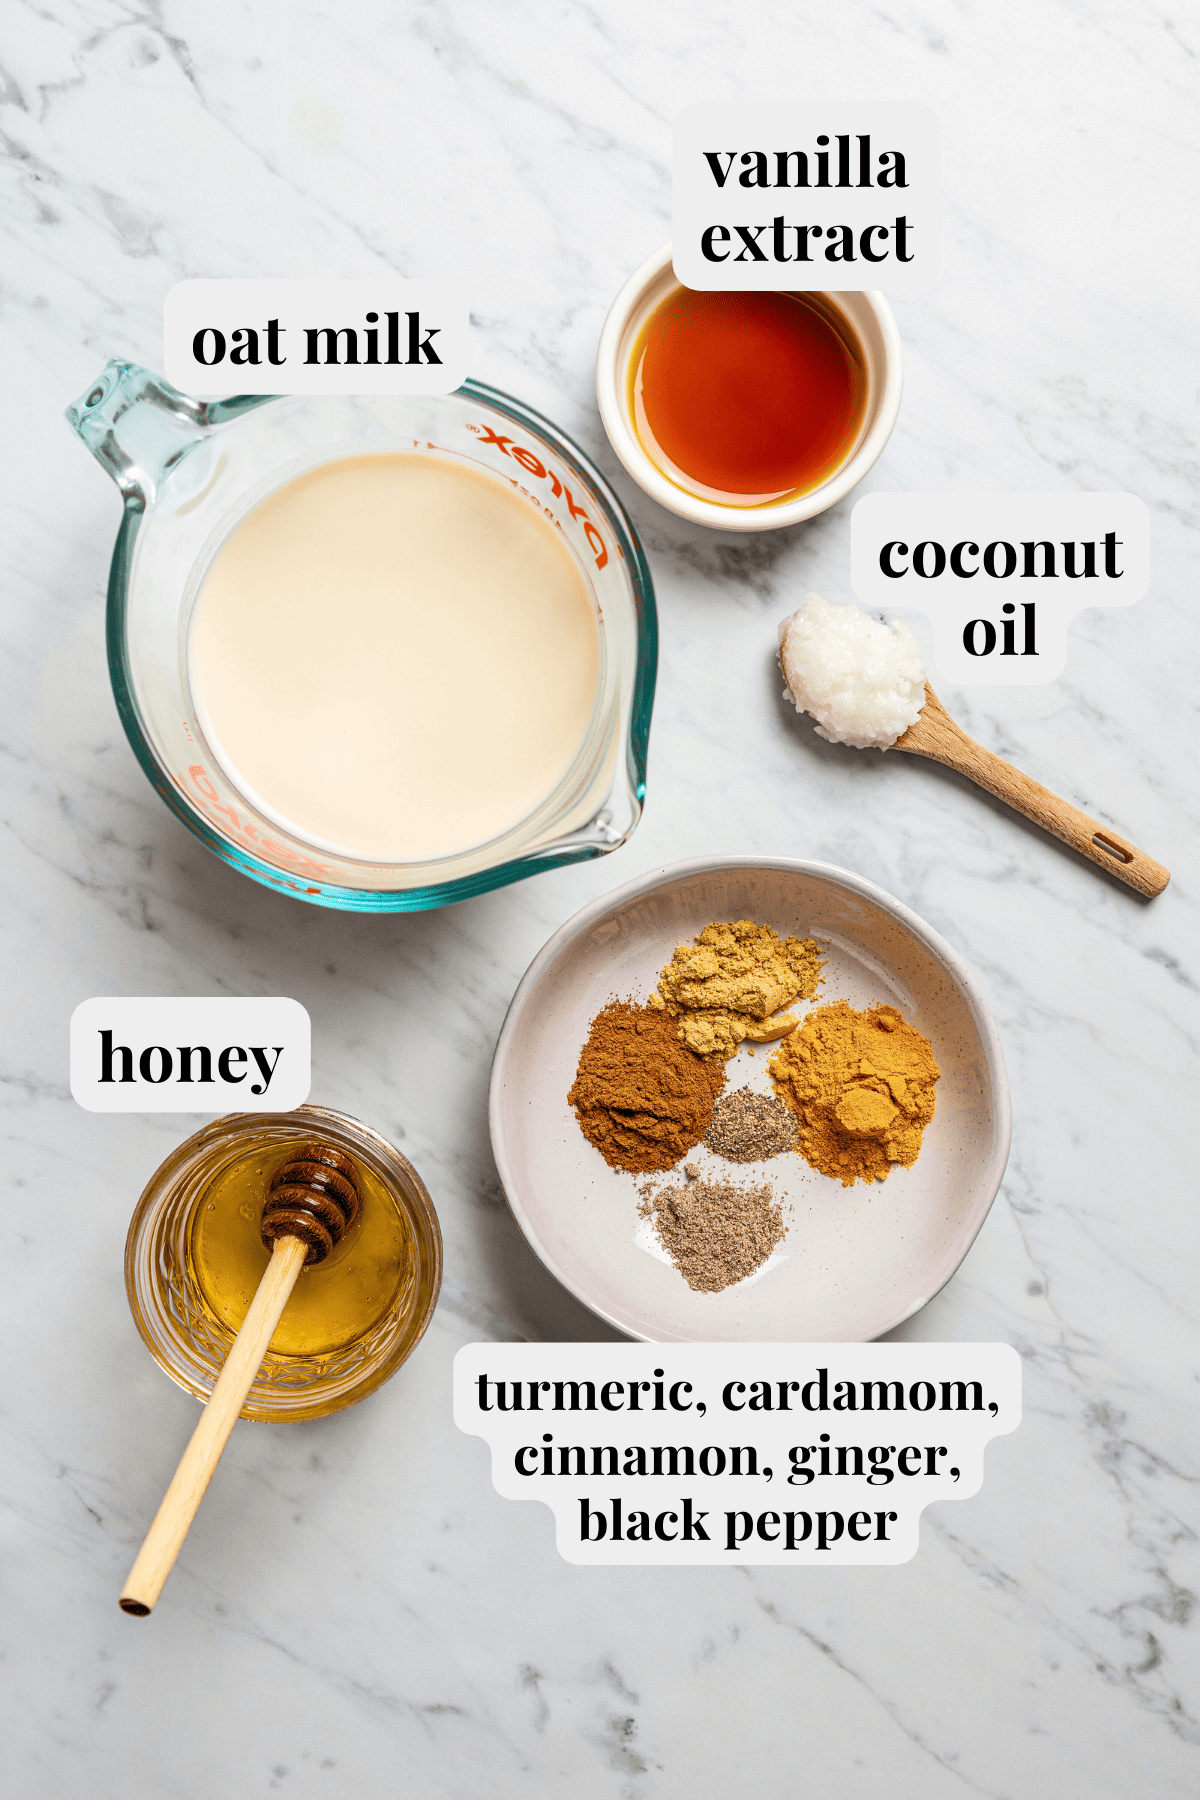 Photo of Golden milk latte ingredients.